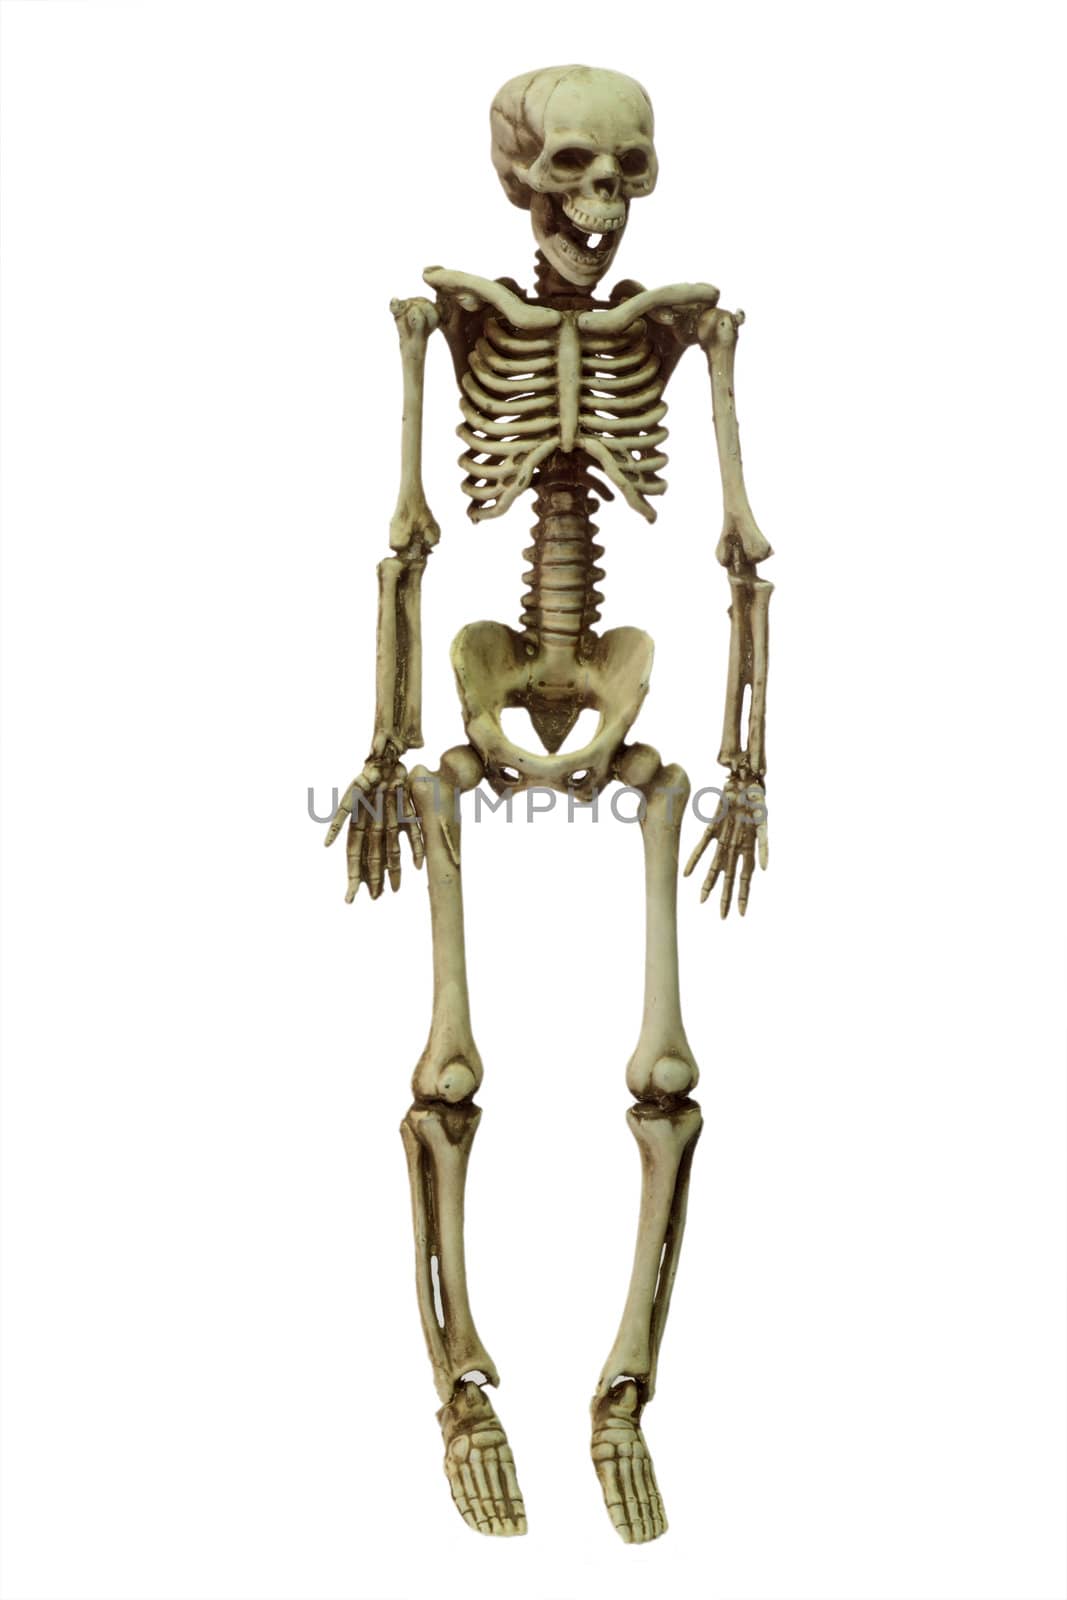 Halloween skeleton on white background
